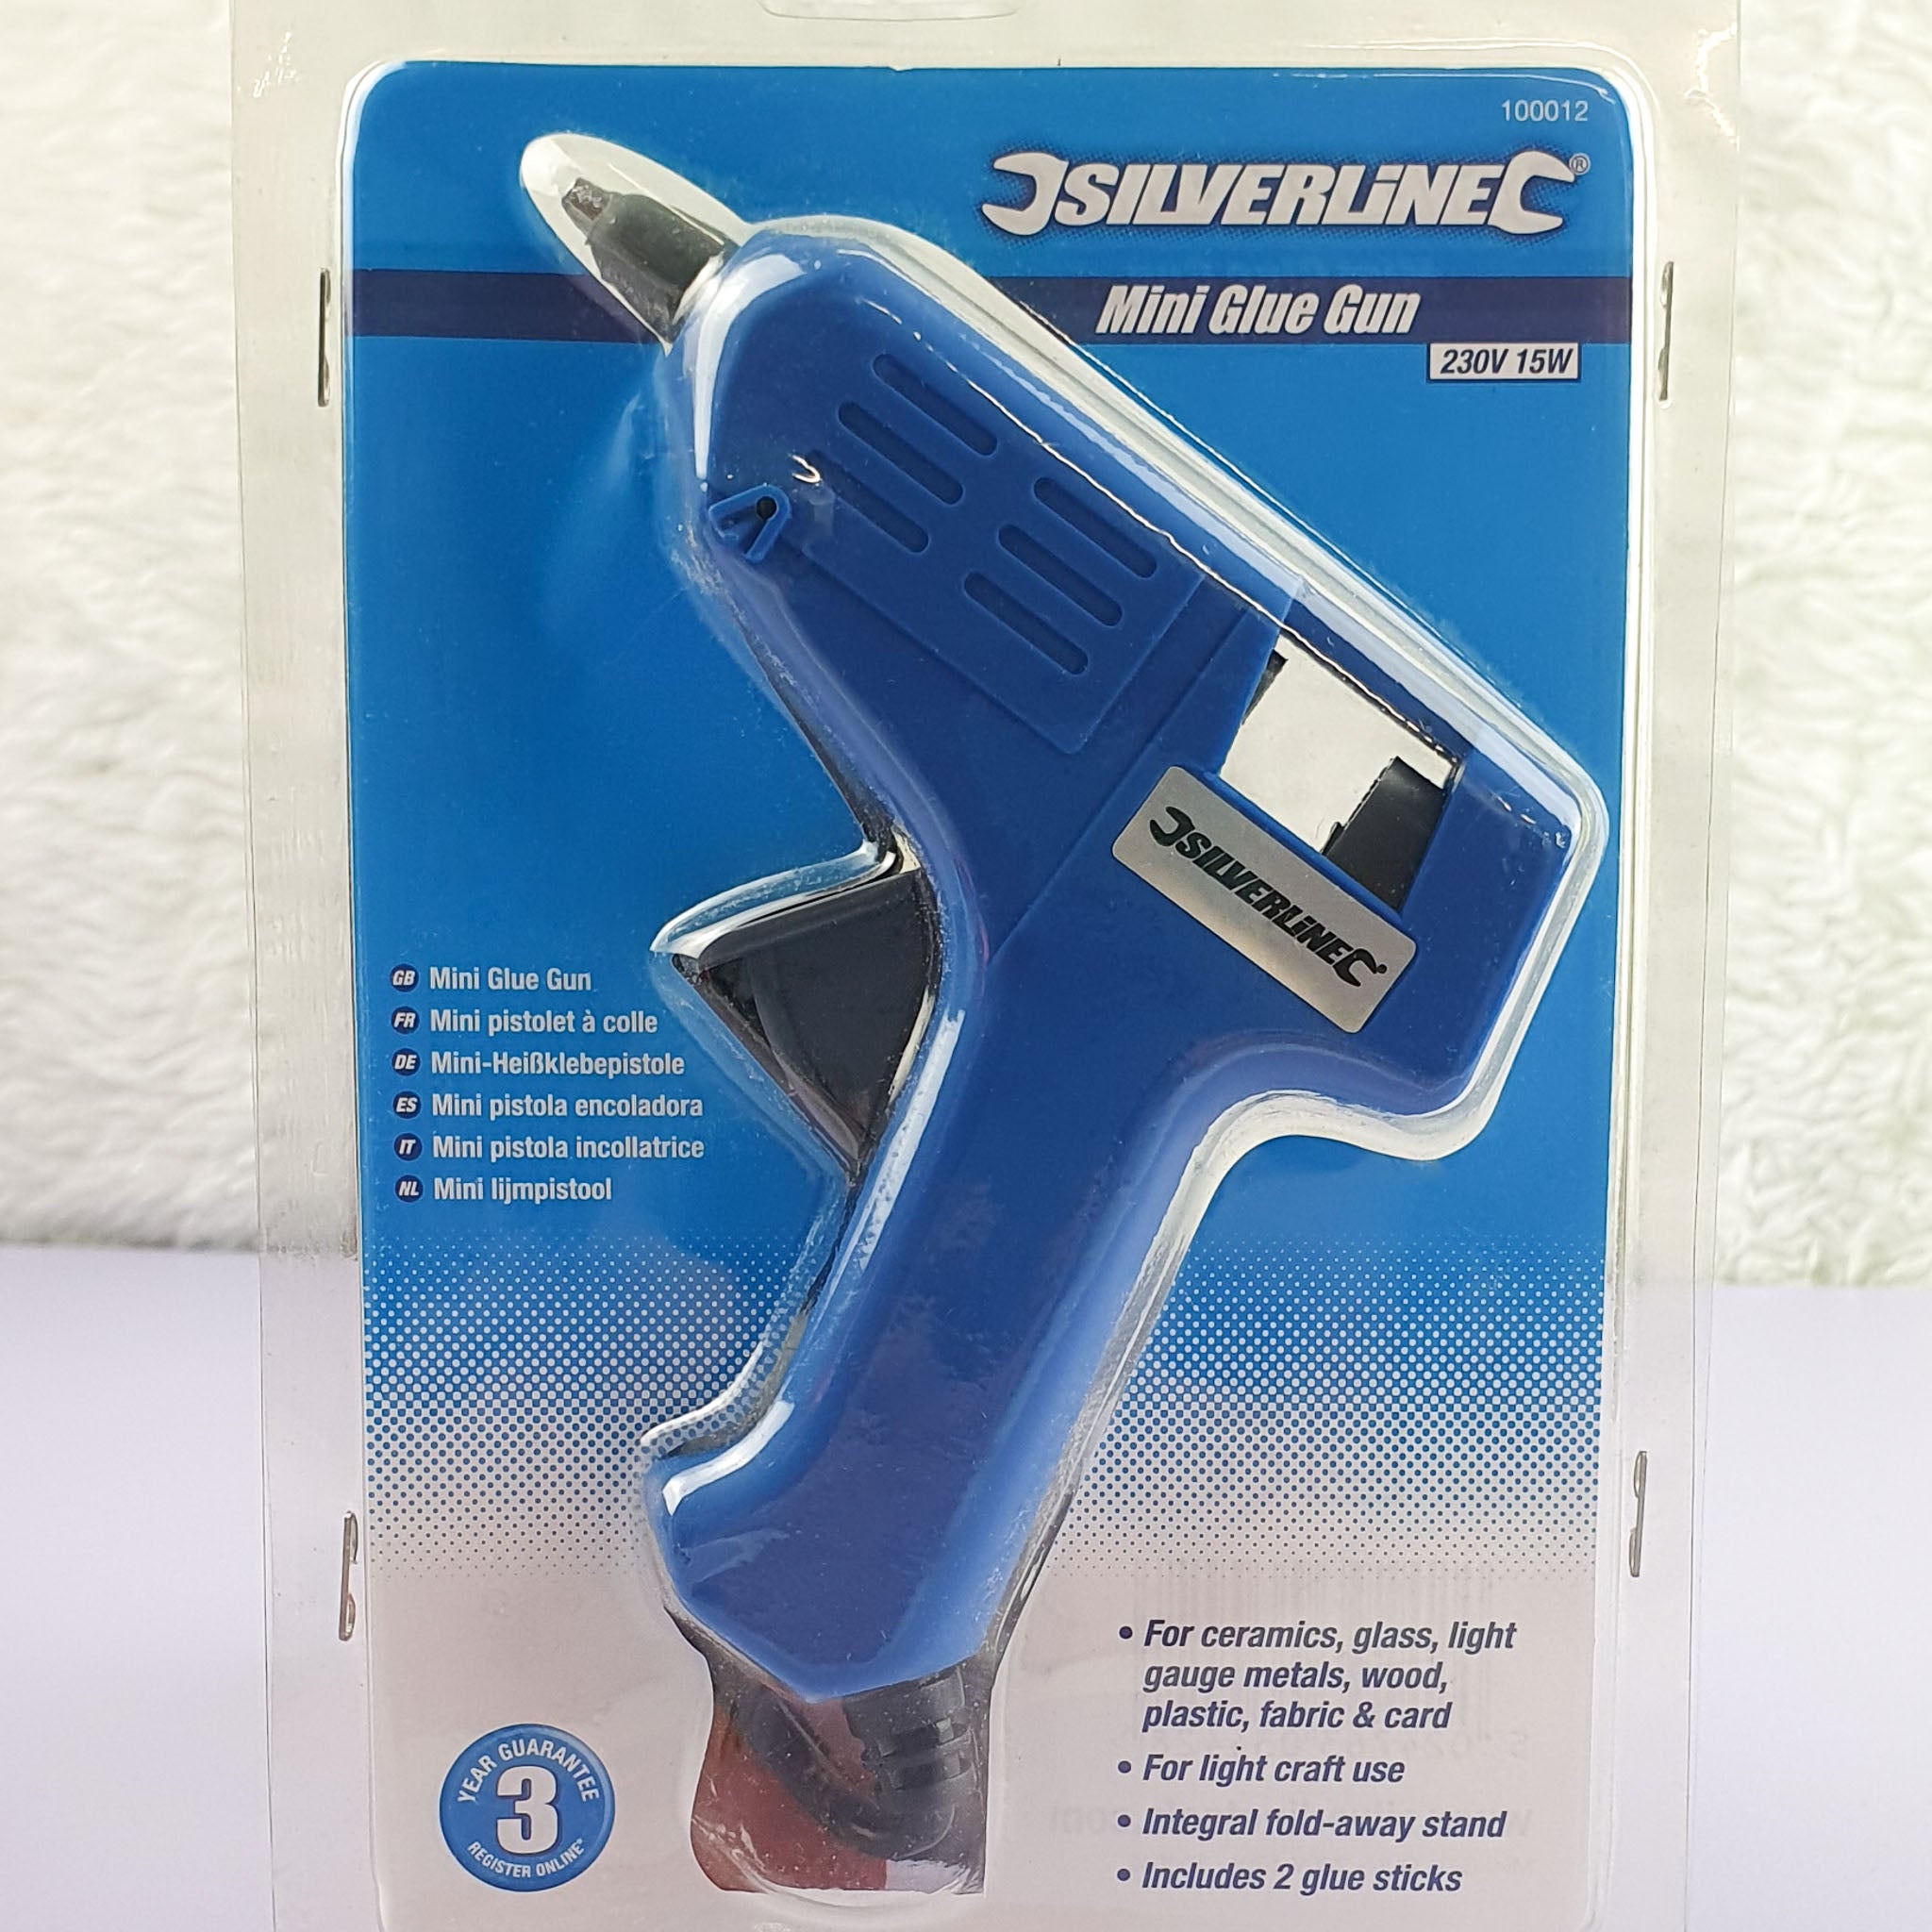 Silverline Mini Glue Gun in packaging